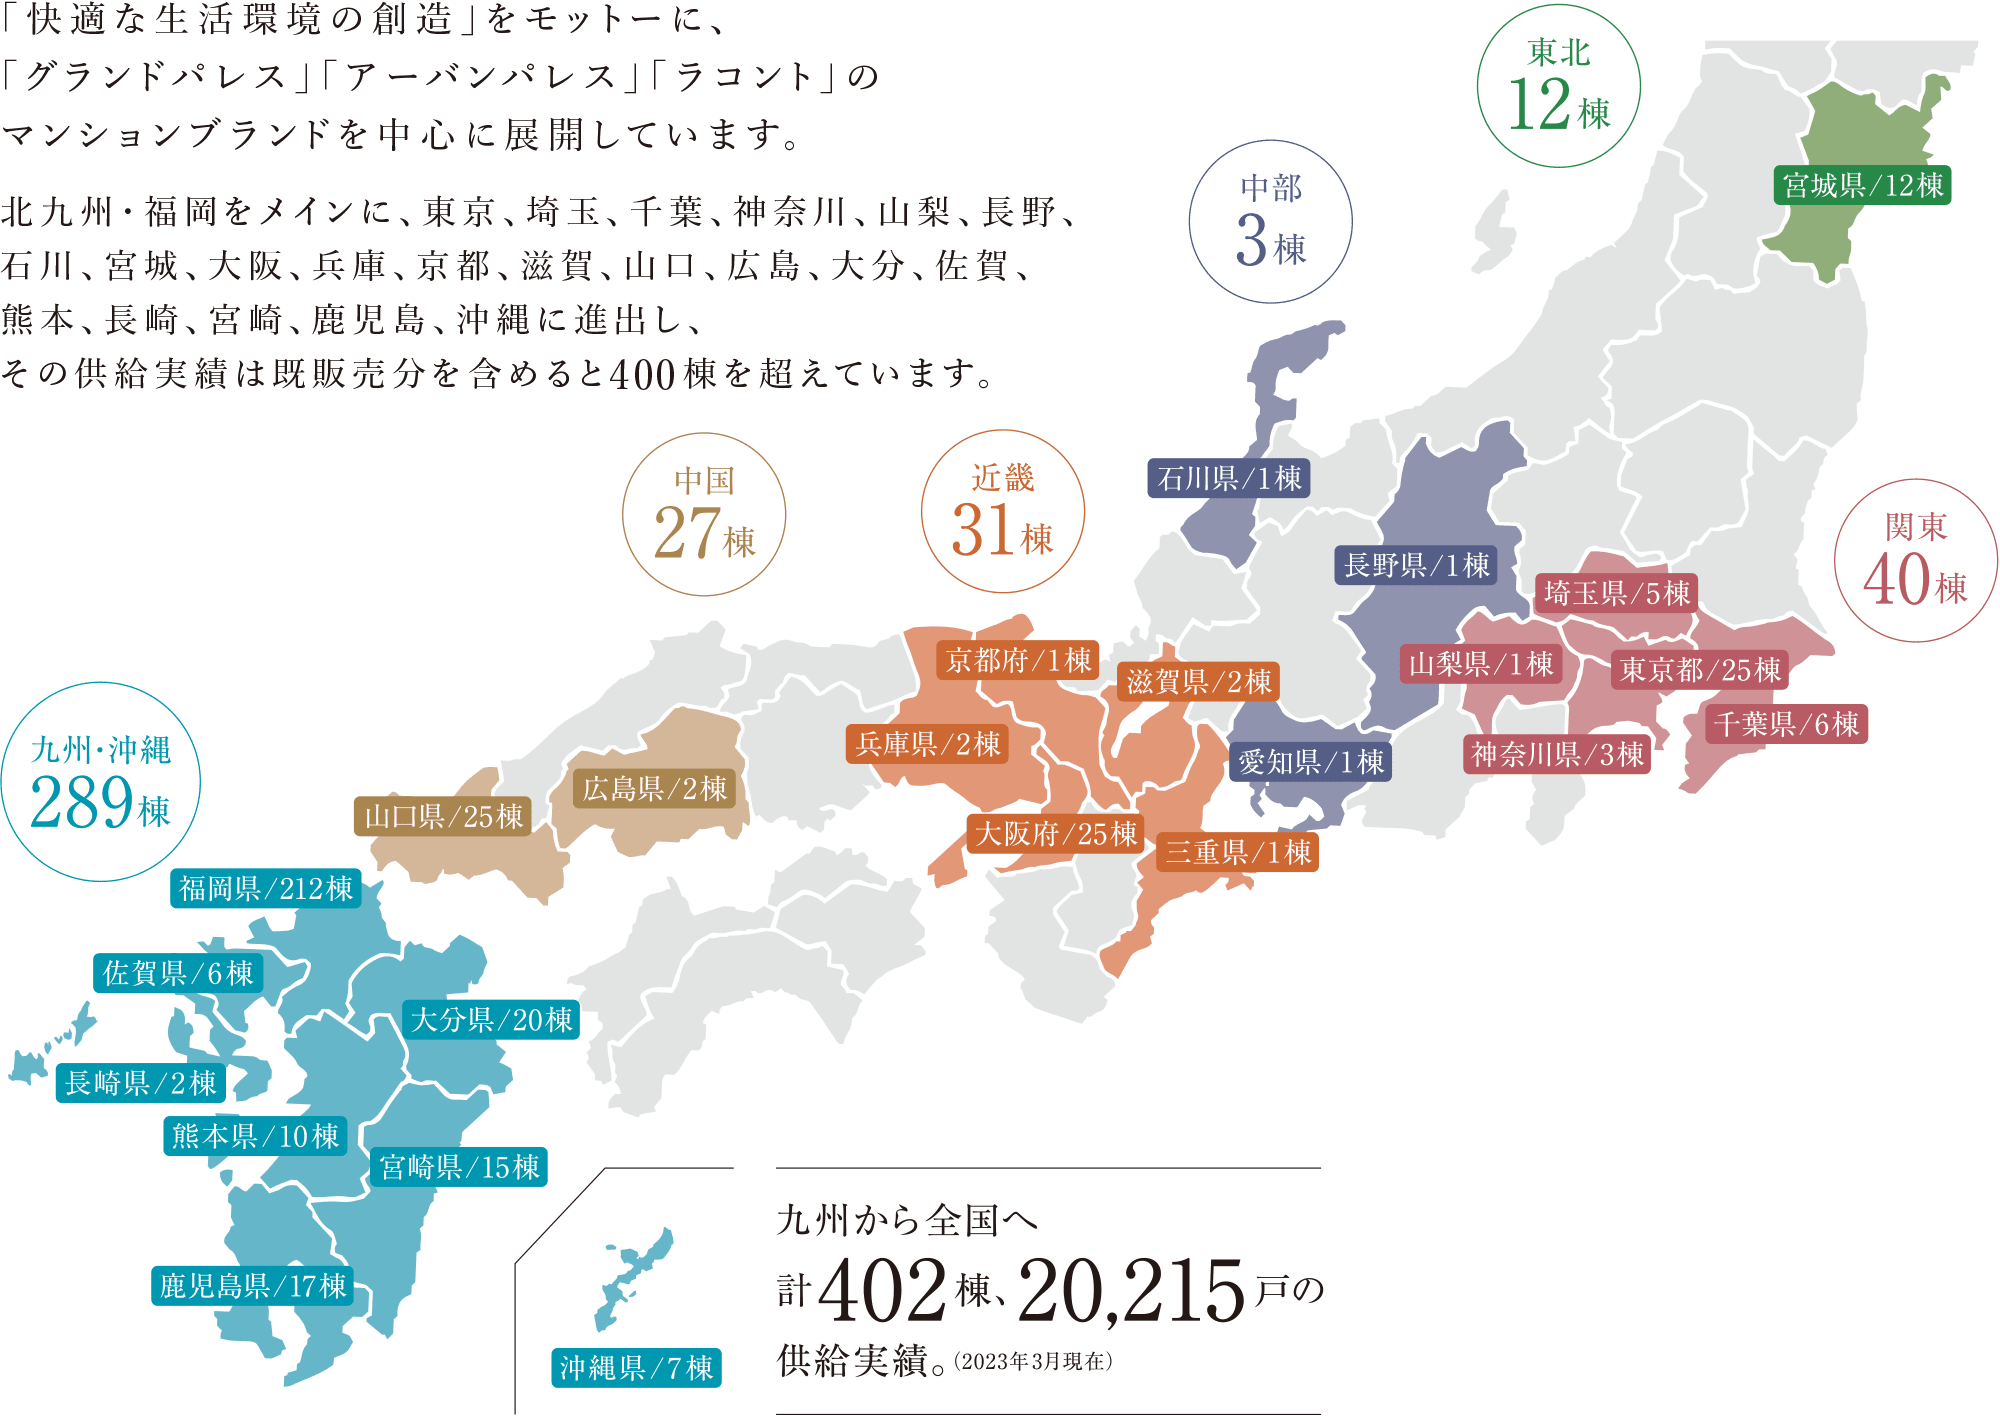 九州から全国へ、20,215戸の供給実績